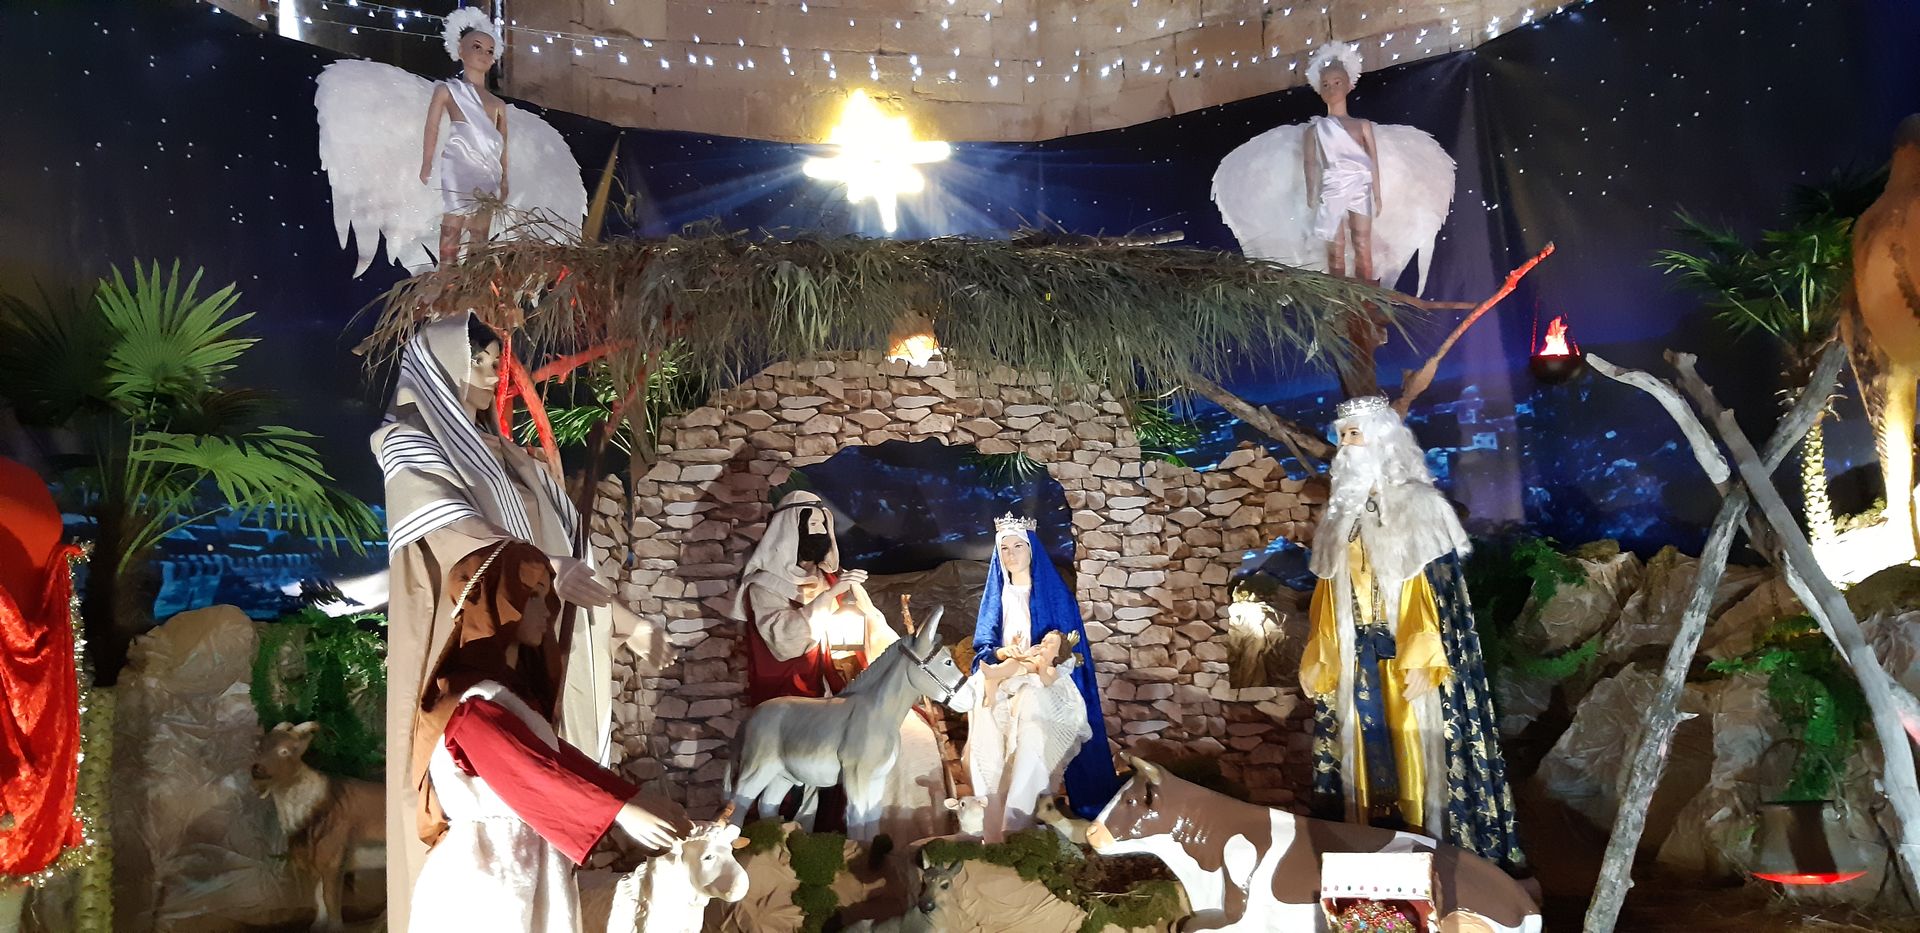 Crèche grandeur nature à la Chapelle des Pénitents d'Aniane dans le cadre des Fééries de Noël